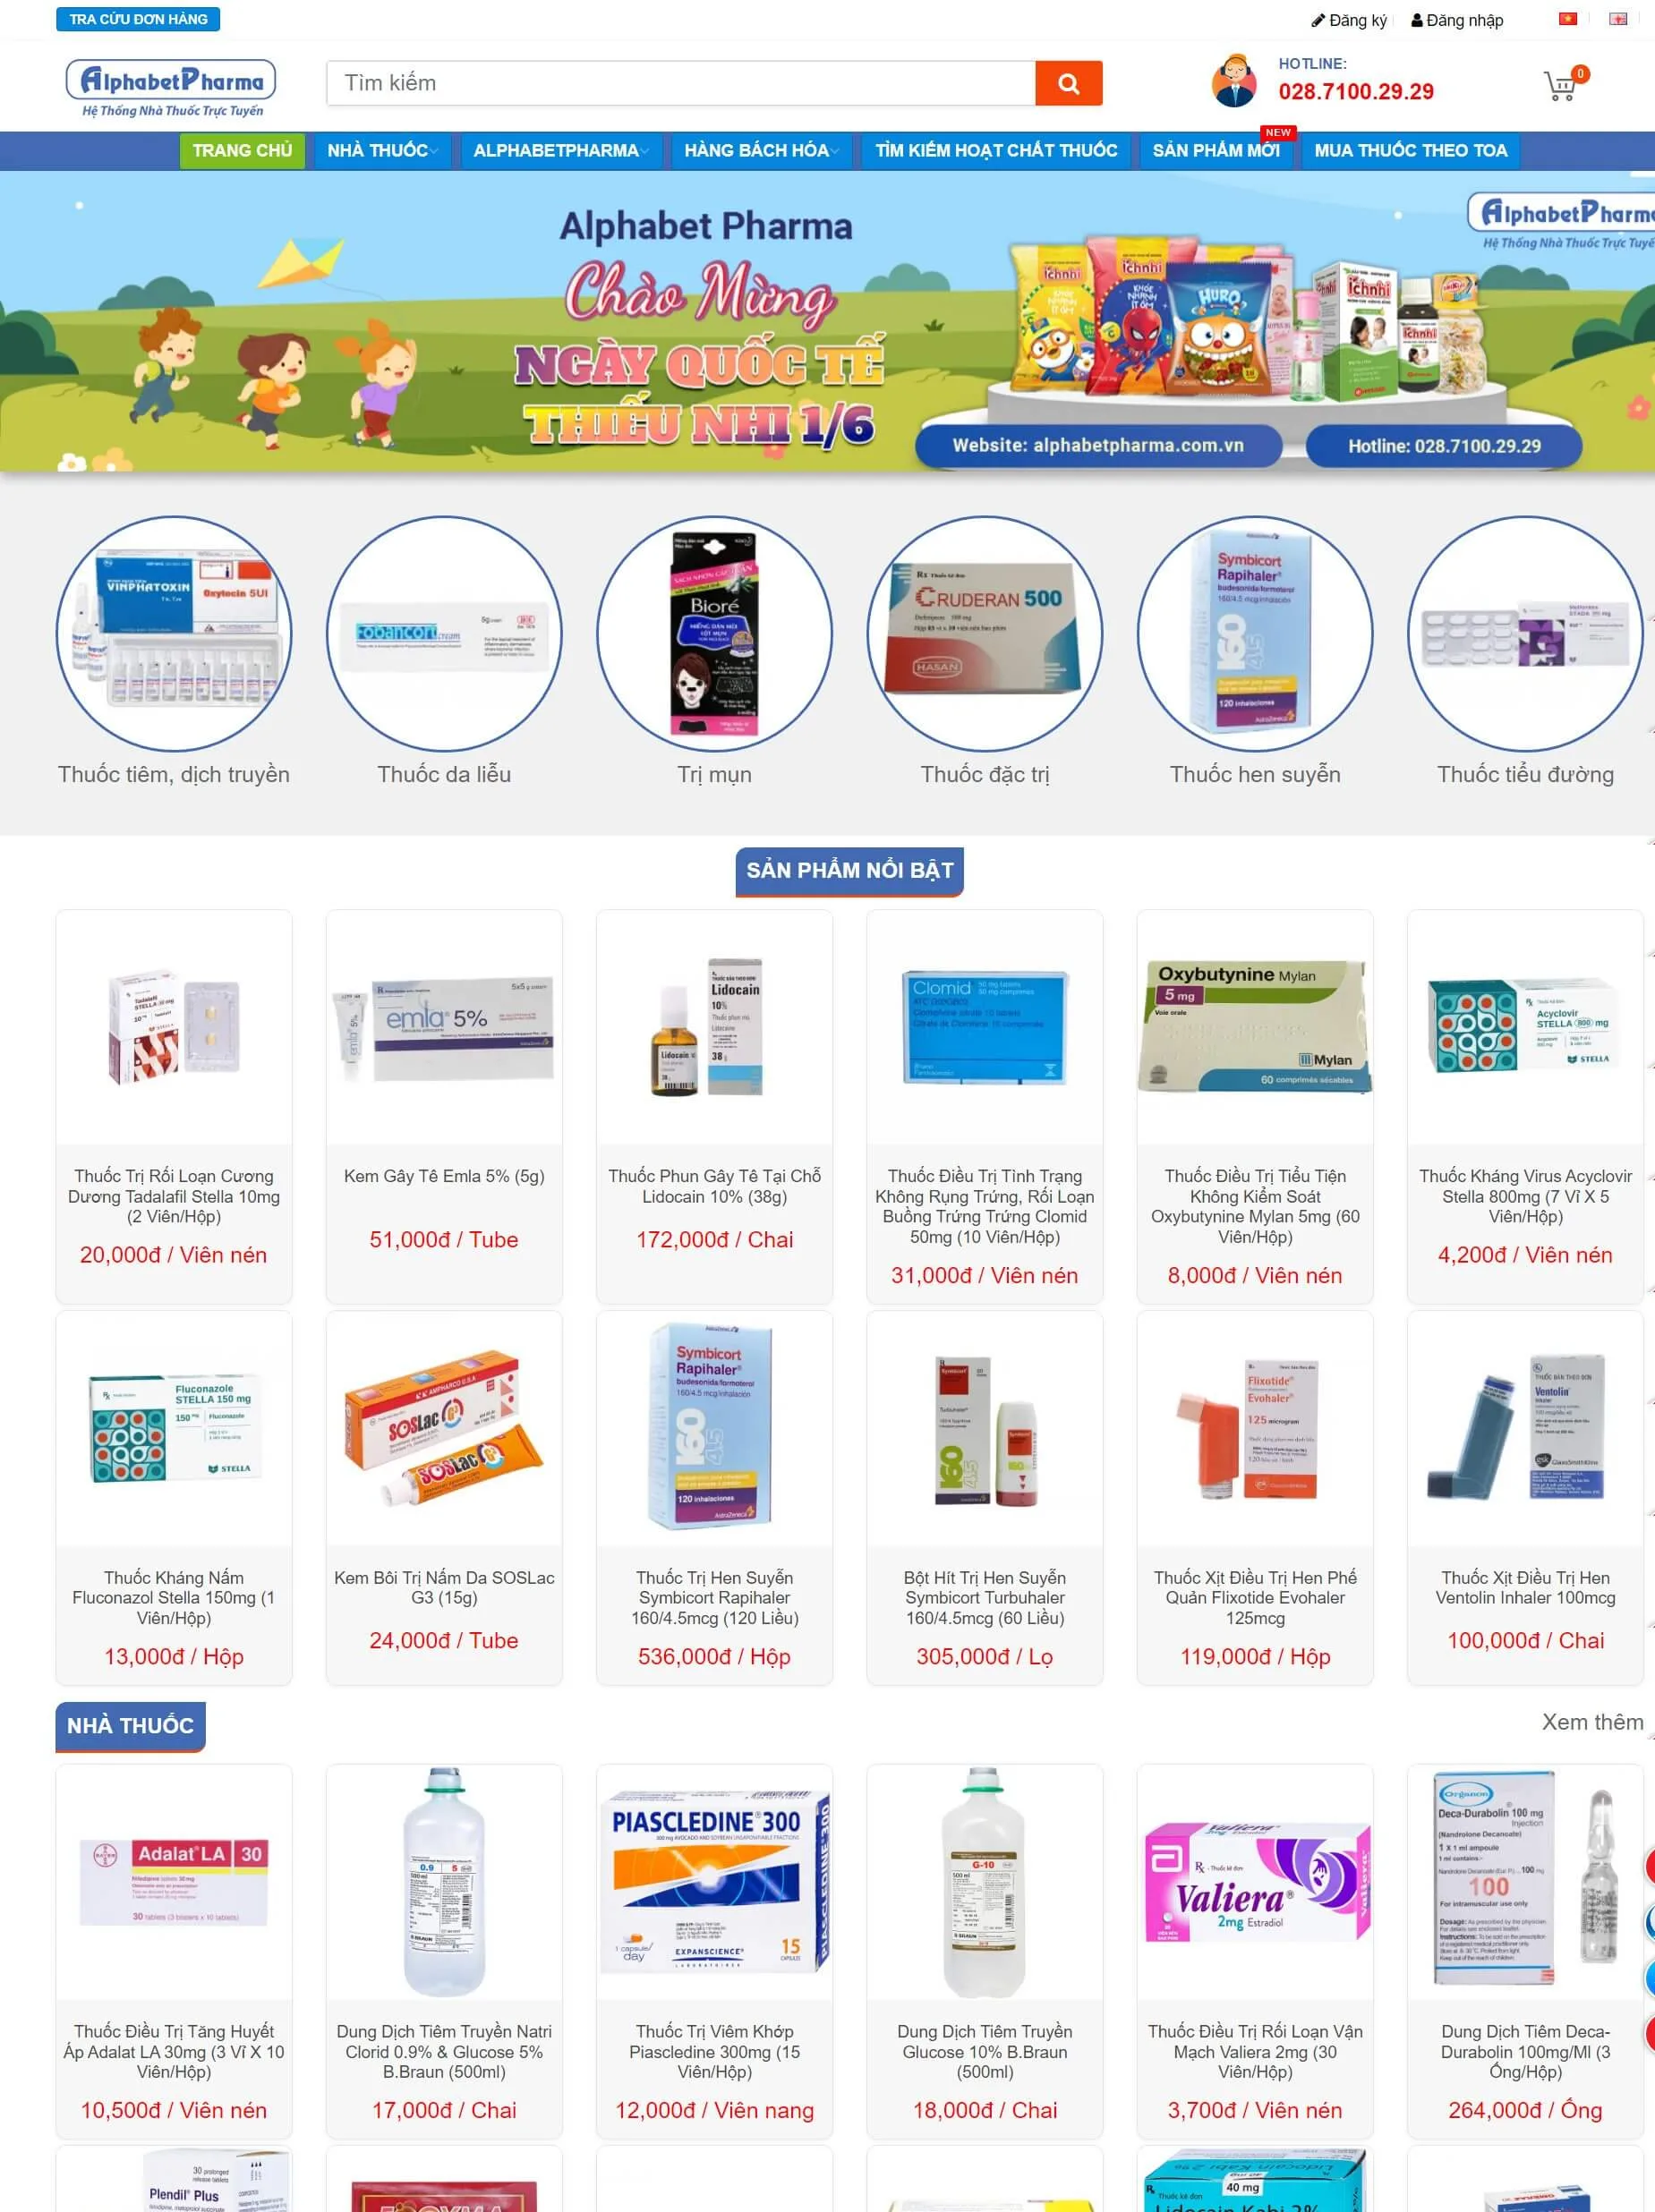 Mẫu thiết kế website bán hàng Alphabet Pharma